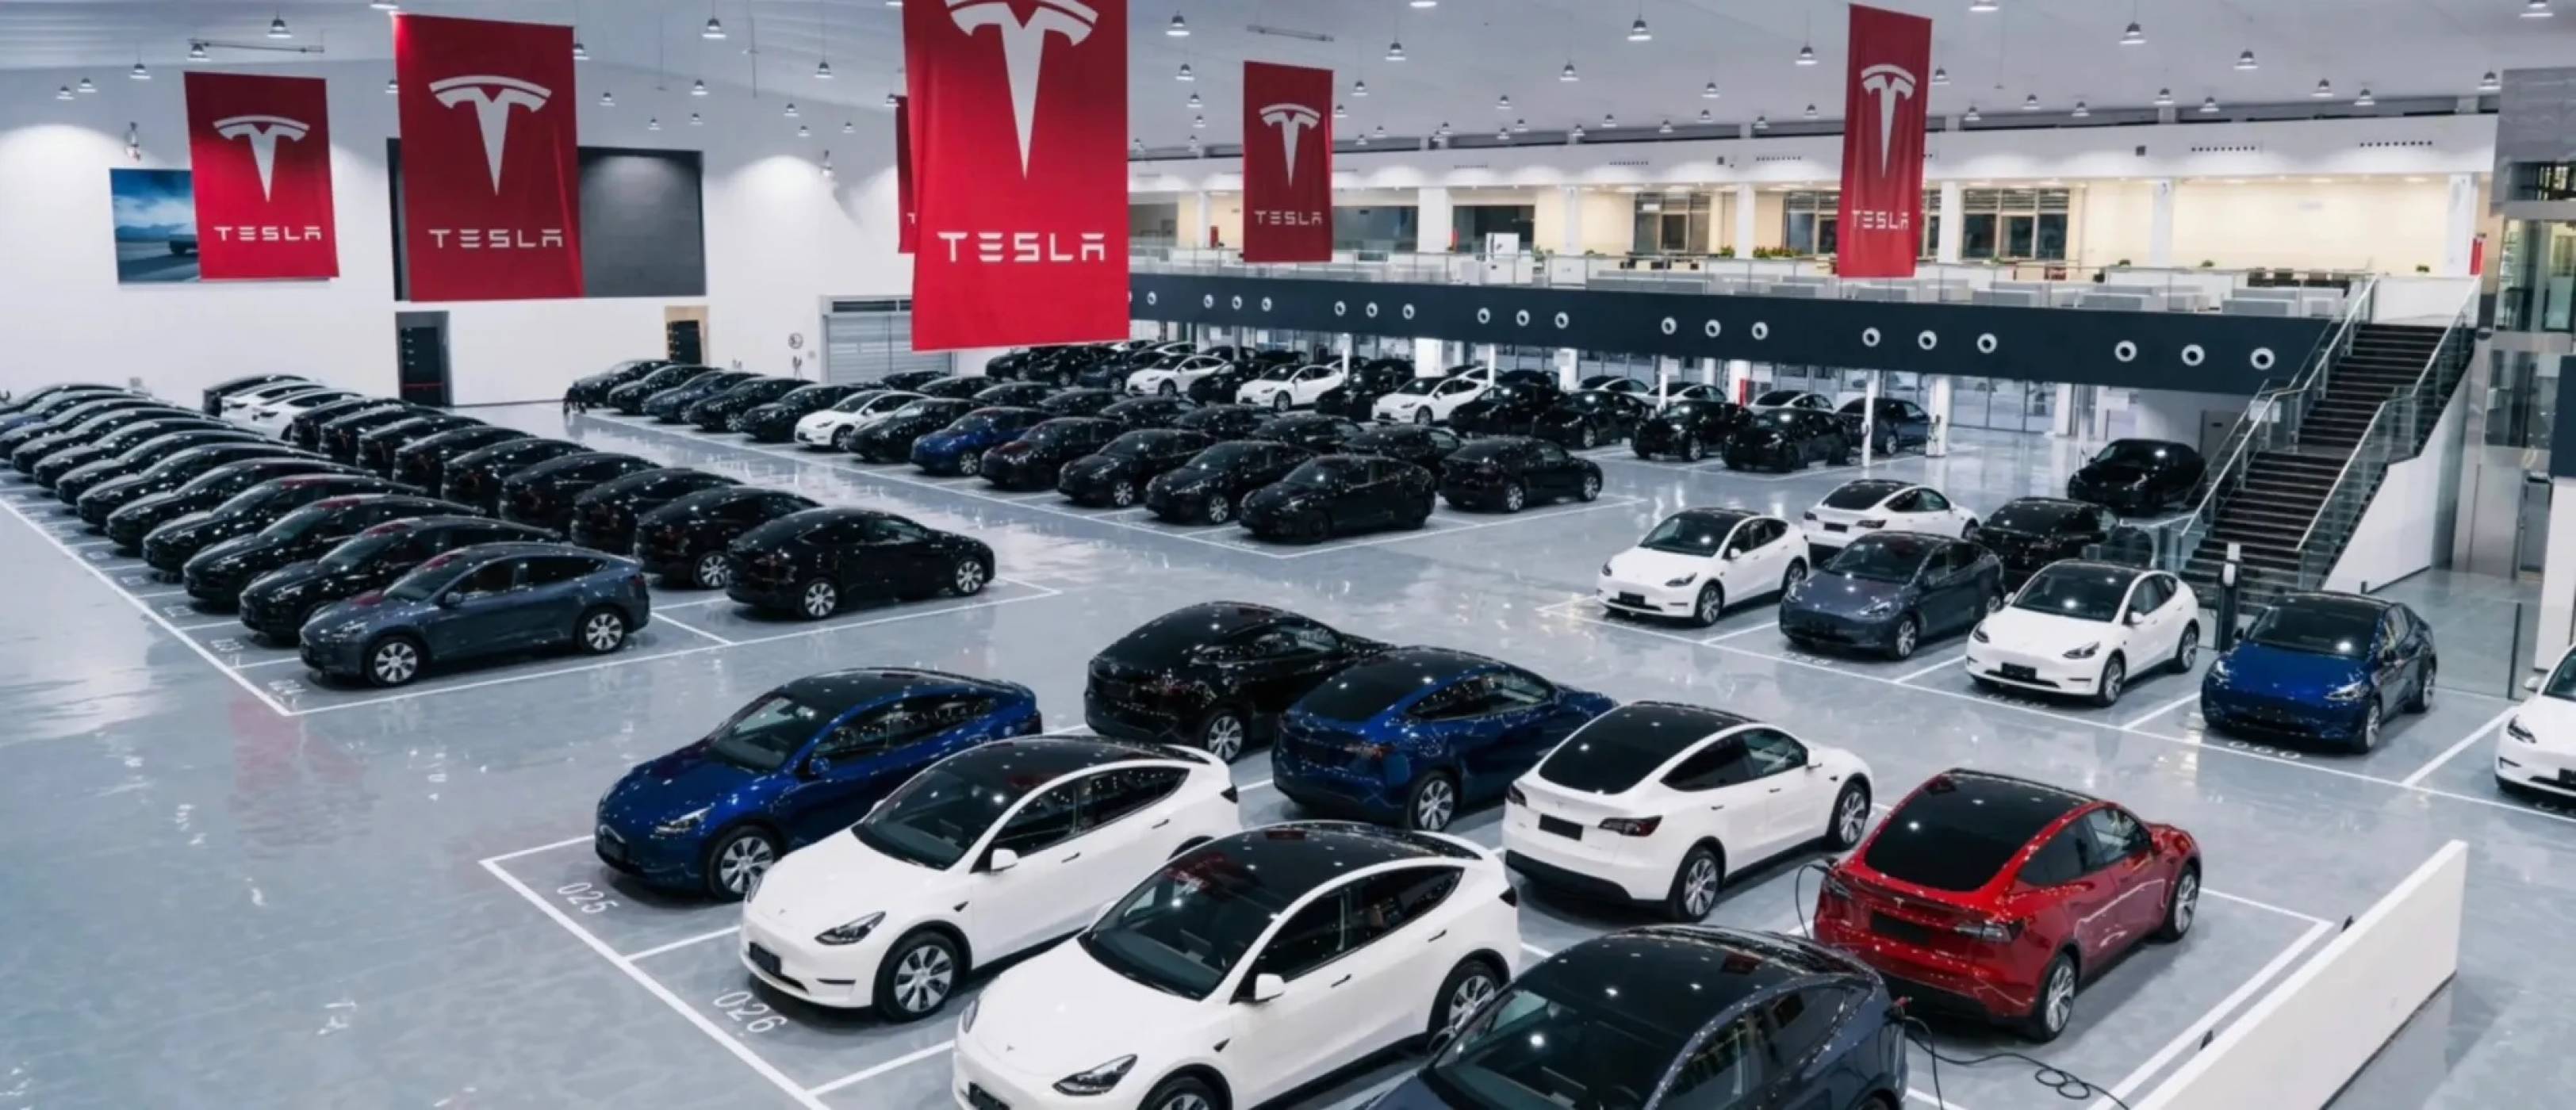 Въпреки че Мъск продава акции, Tesla все още се оценява на трилион долара 